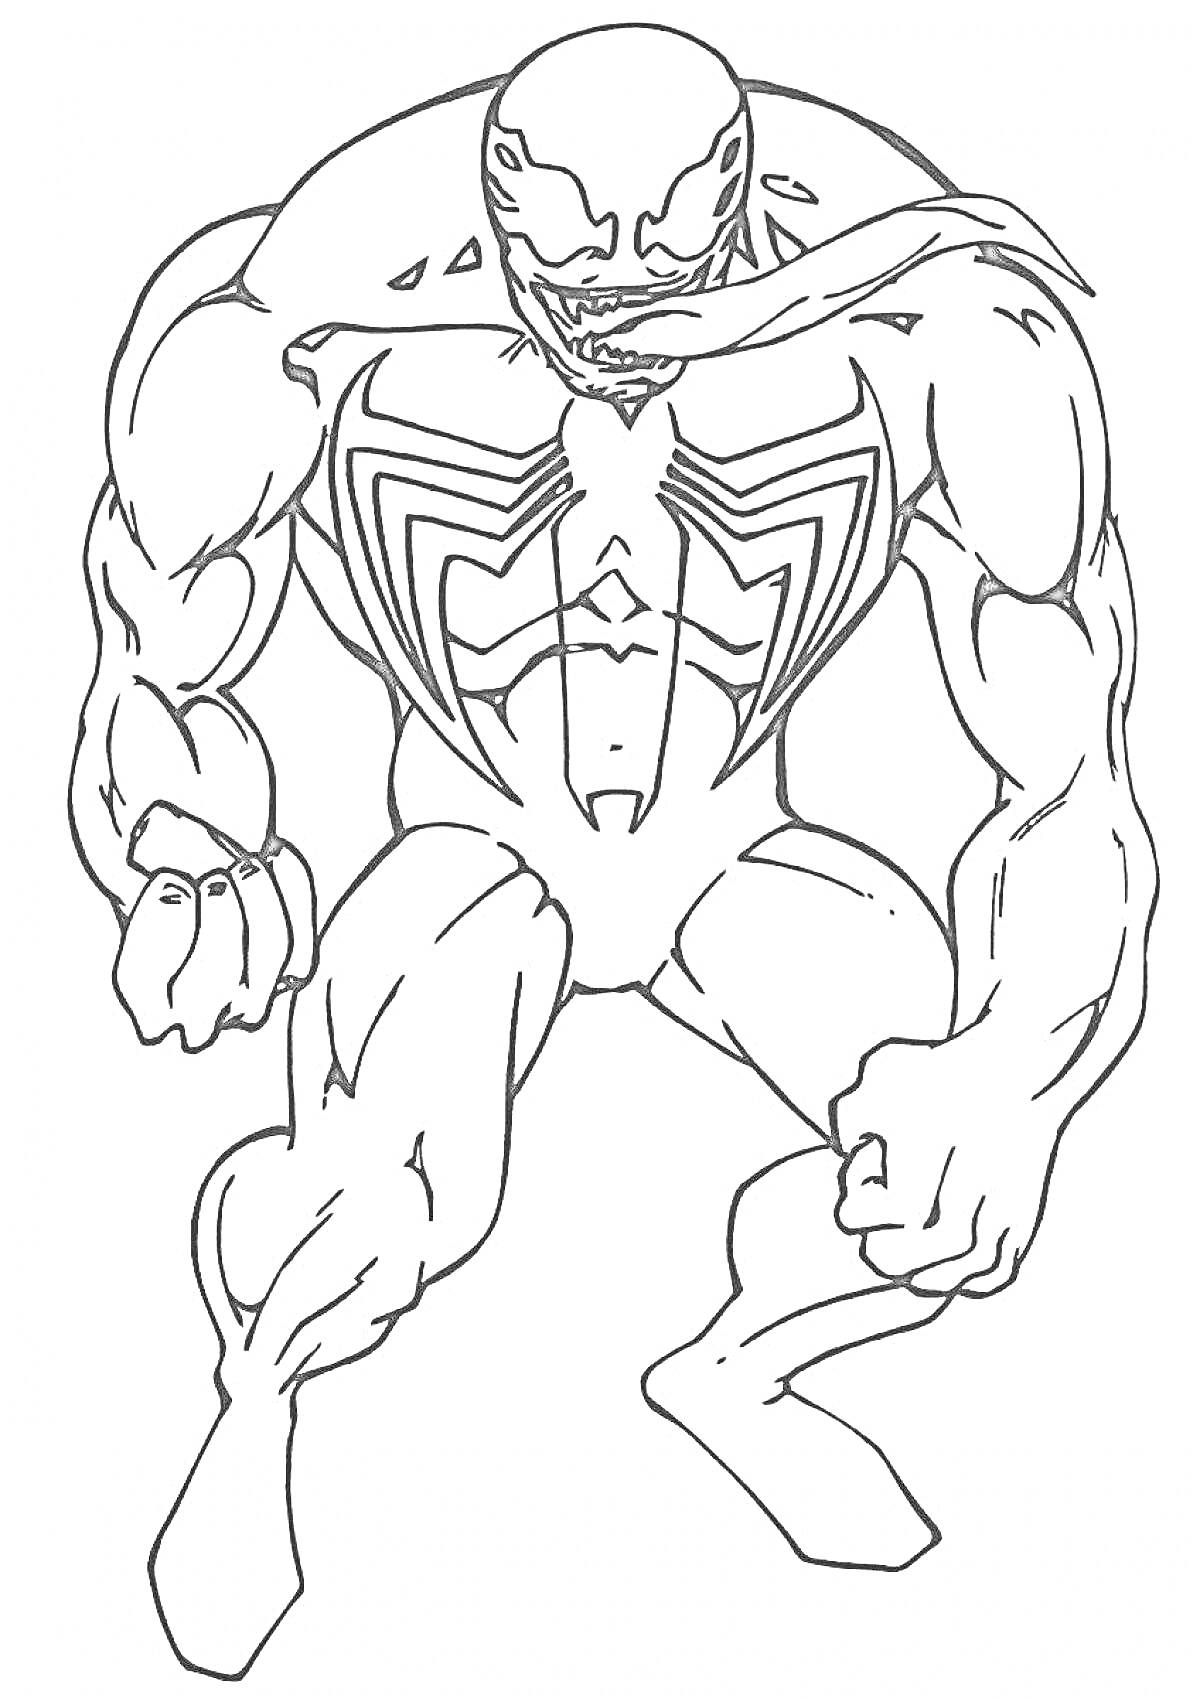 Раскраска Веном в атакующей позе, мускулистый с раскрытой пастью